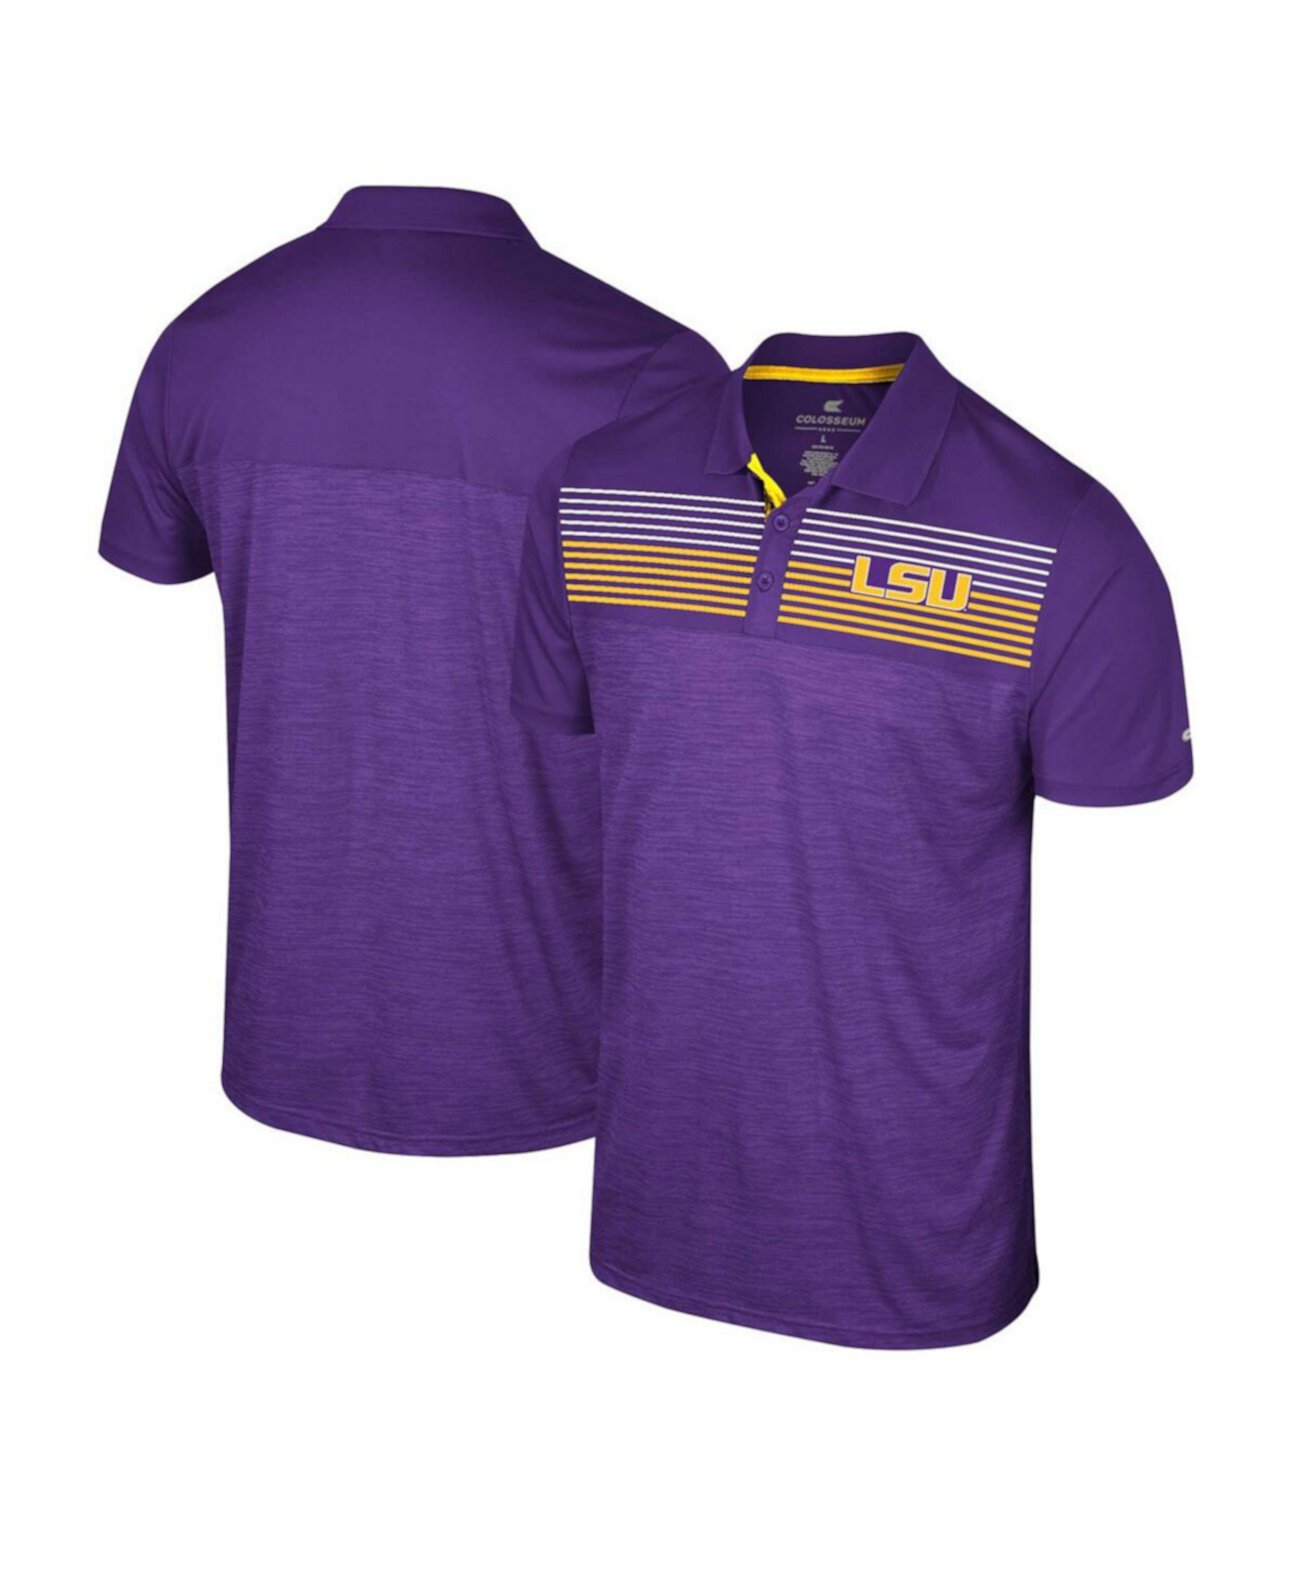 Мужская фиолетовая рубашка-поло LSU Tigers Langmore Colosseum